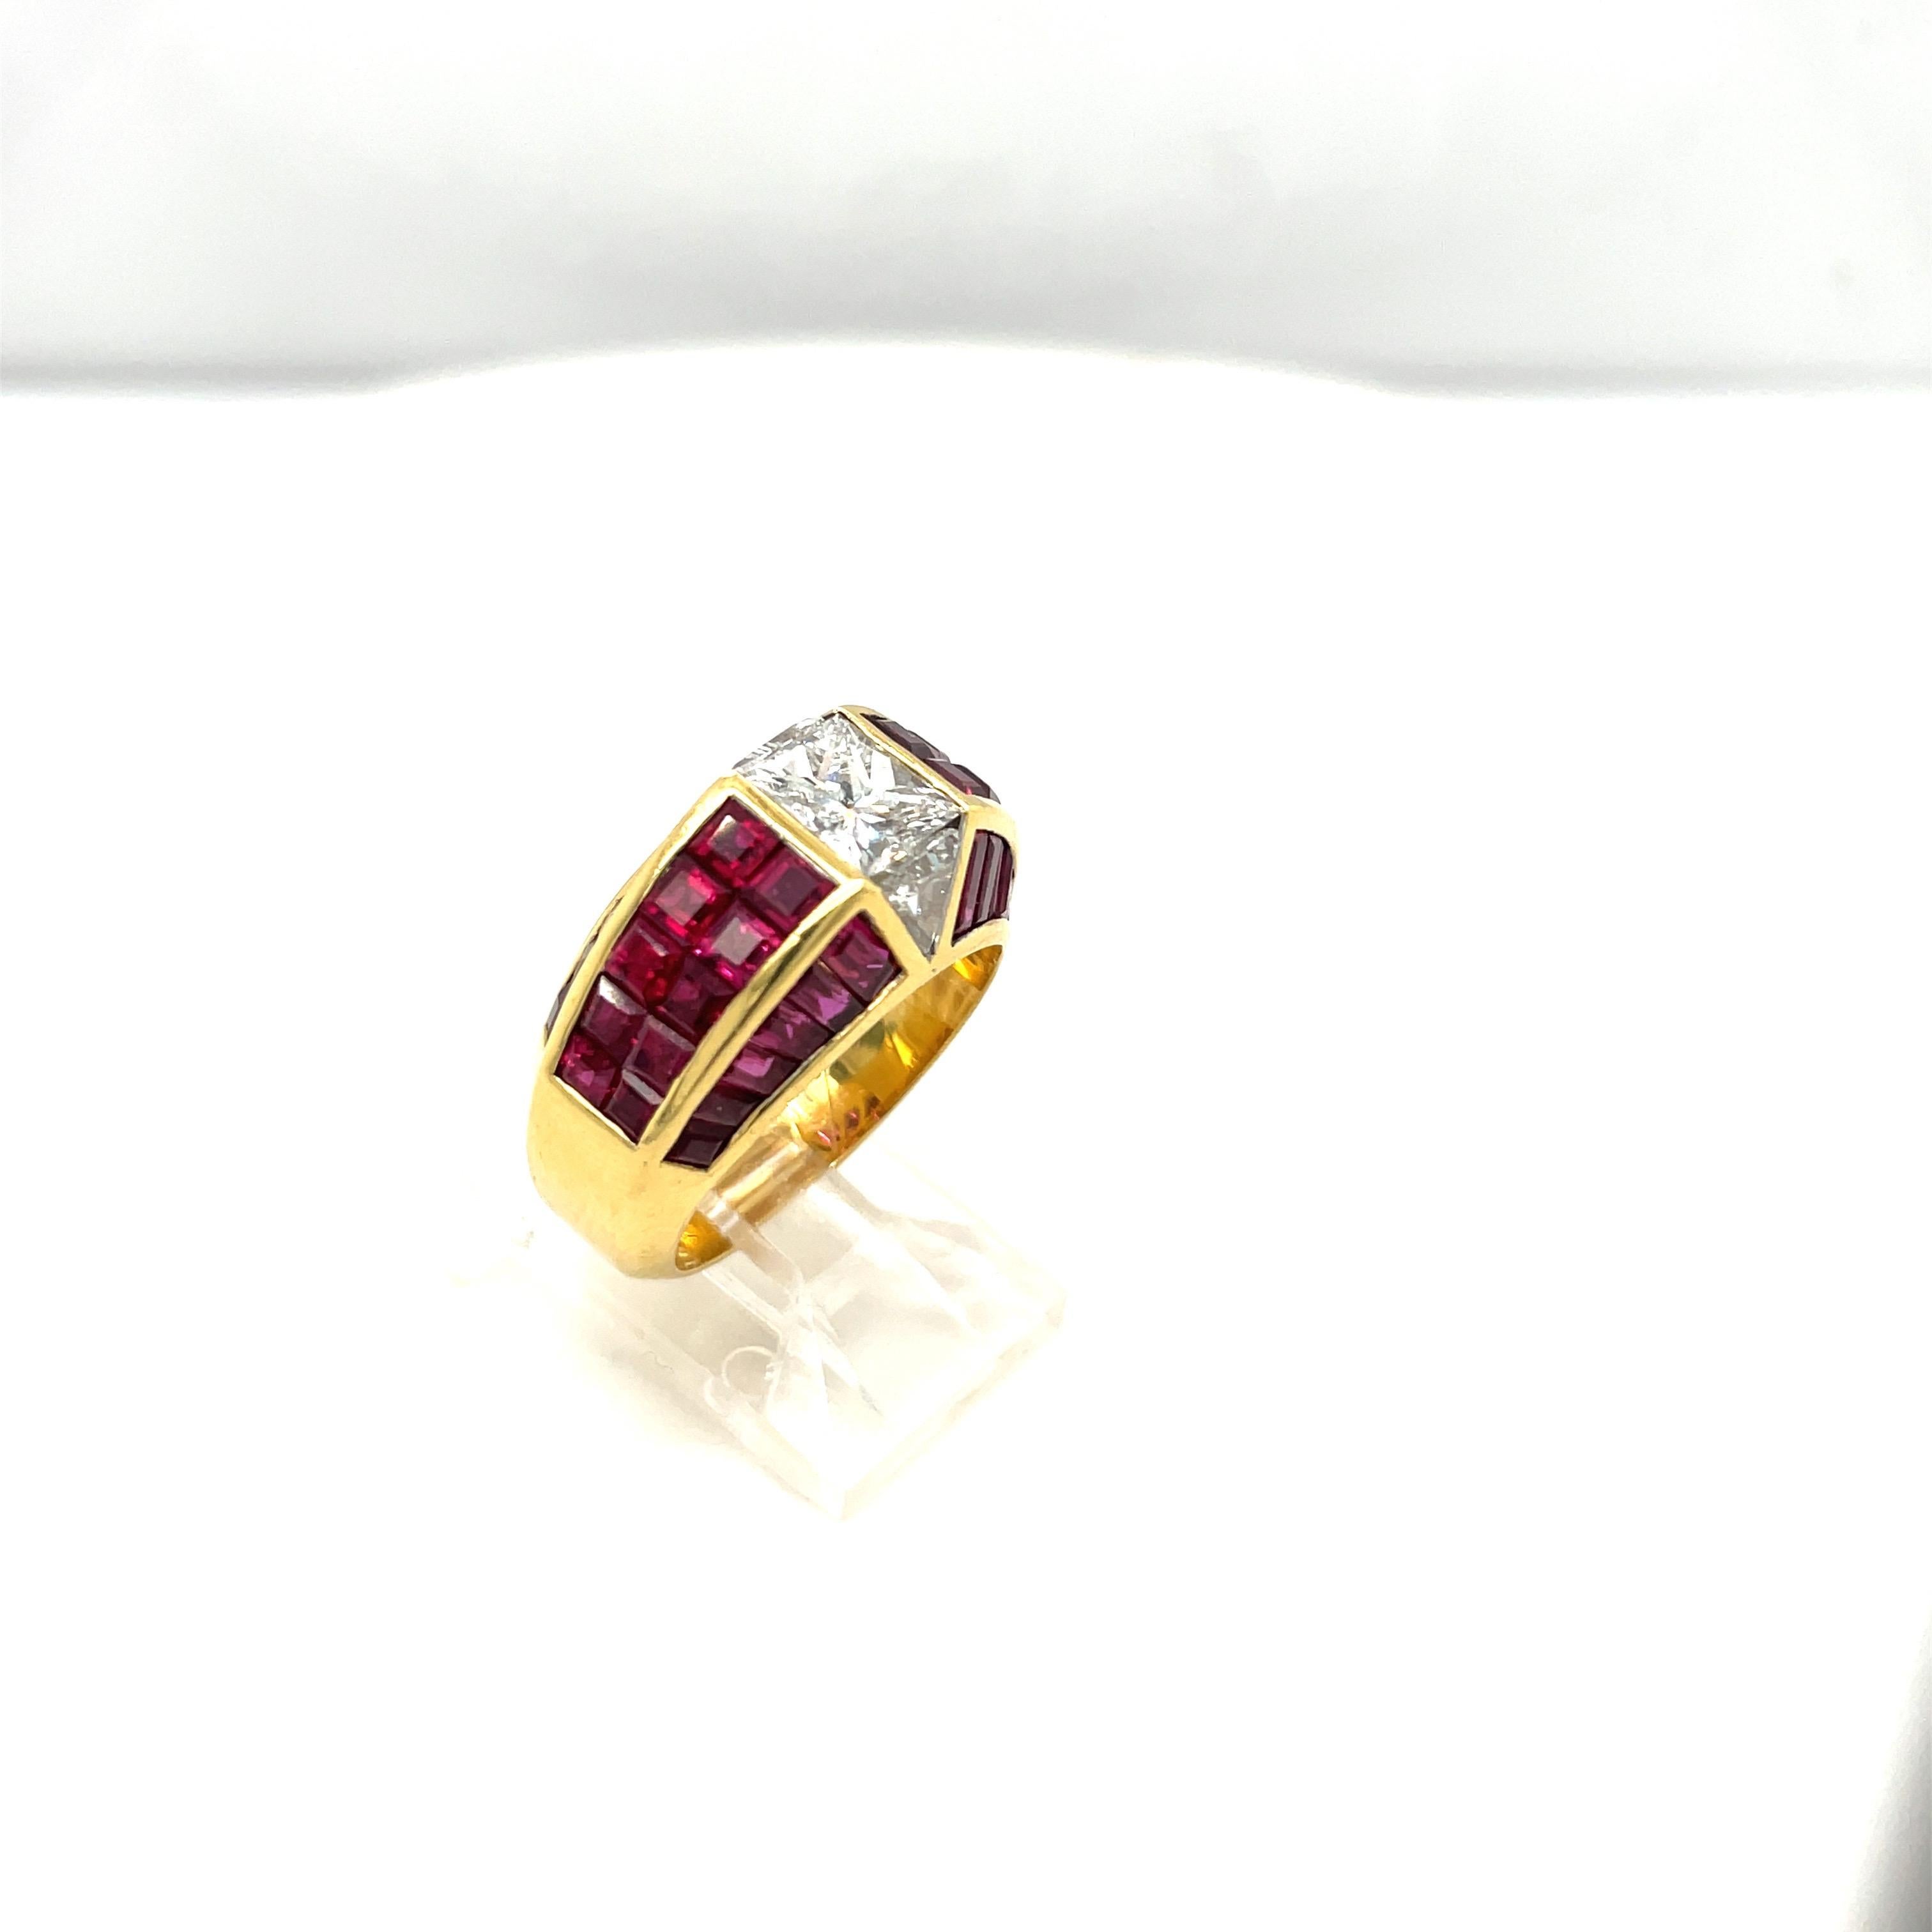 Sous la marque Quadrillion, Bez Ambar a créé le diamant moderne de forme carrée à taille princesse. Elle est devenue l'une des tailles de pierres précieuses les plus innovantes et les plus utilisées du 21e siècle.
Cette magnifique bague en or jaune